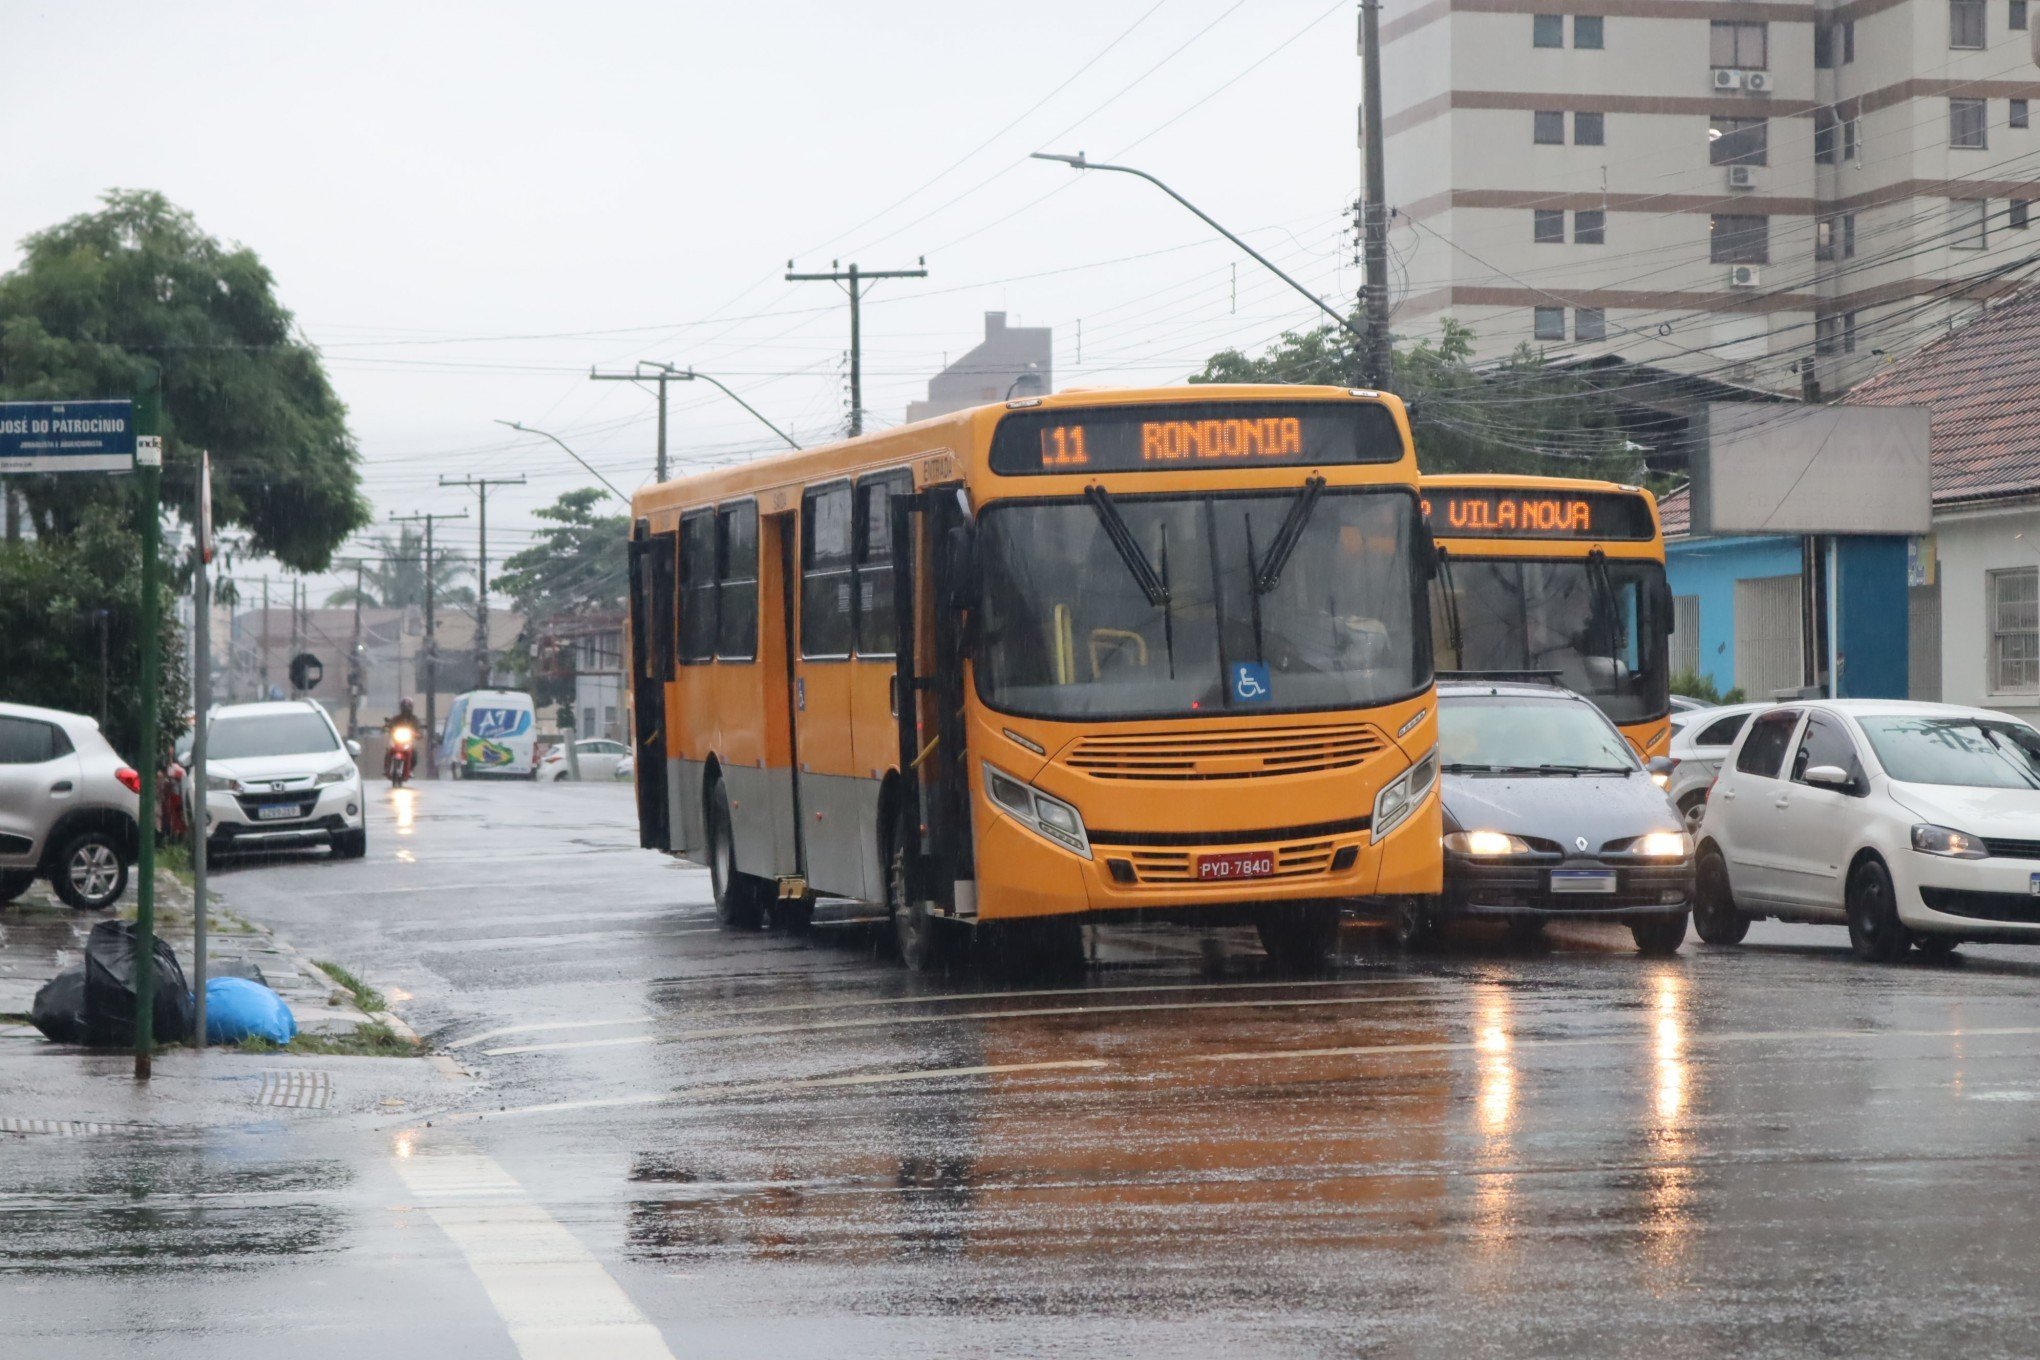 NOVO HAMBURGO: Ônibus da nova concessionária de transporte estraga no primeiro dia útil de operação